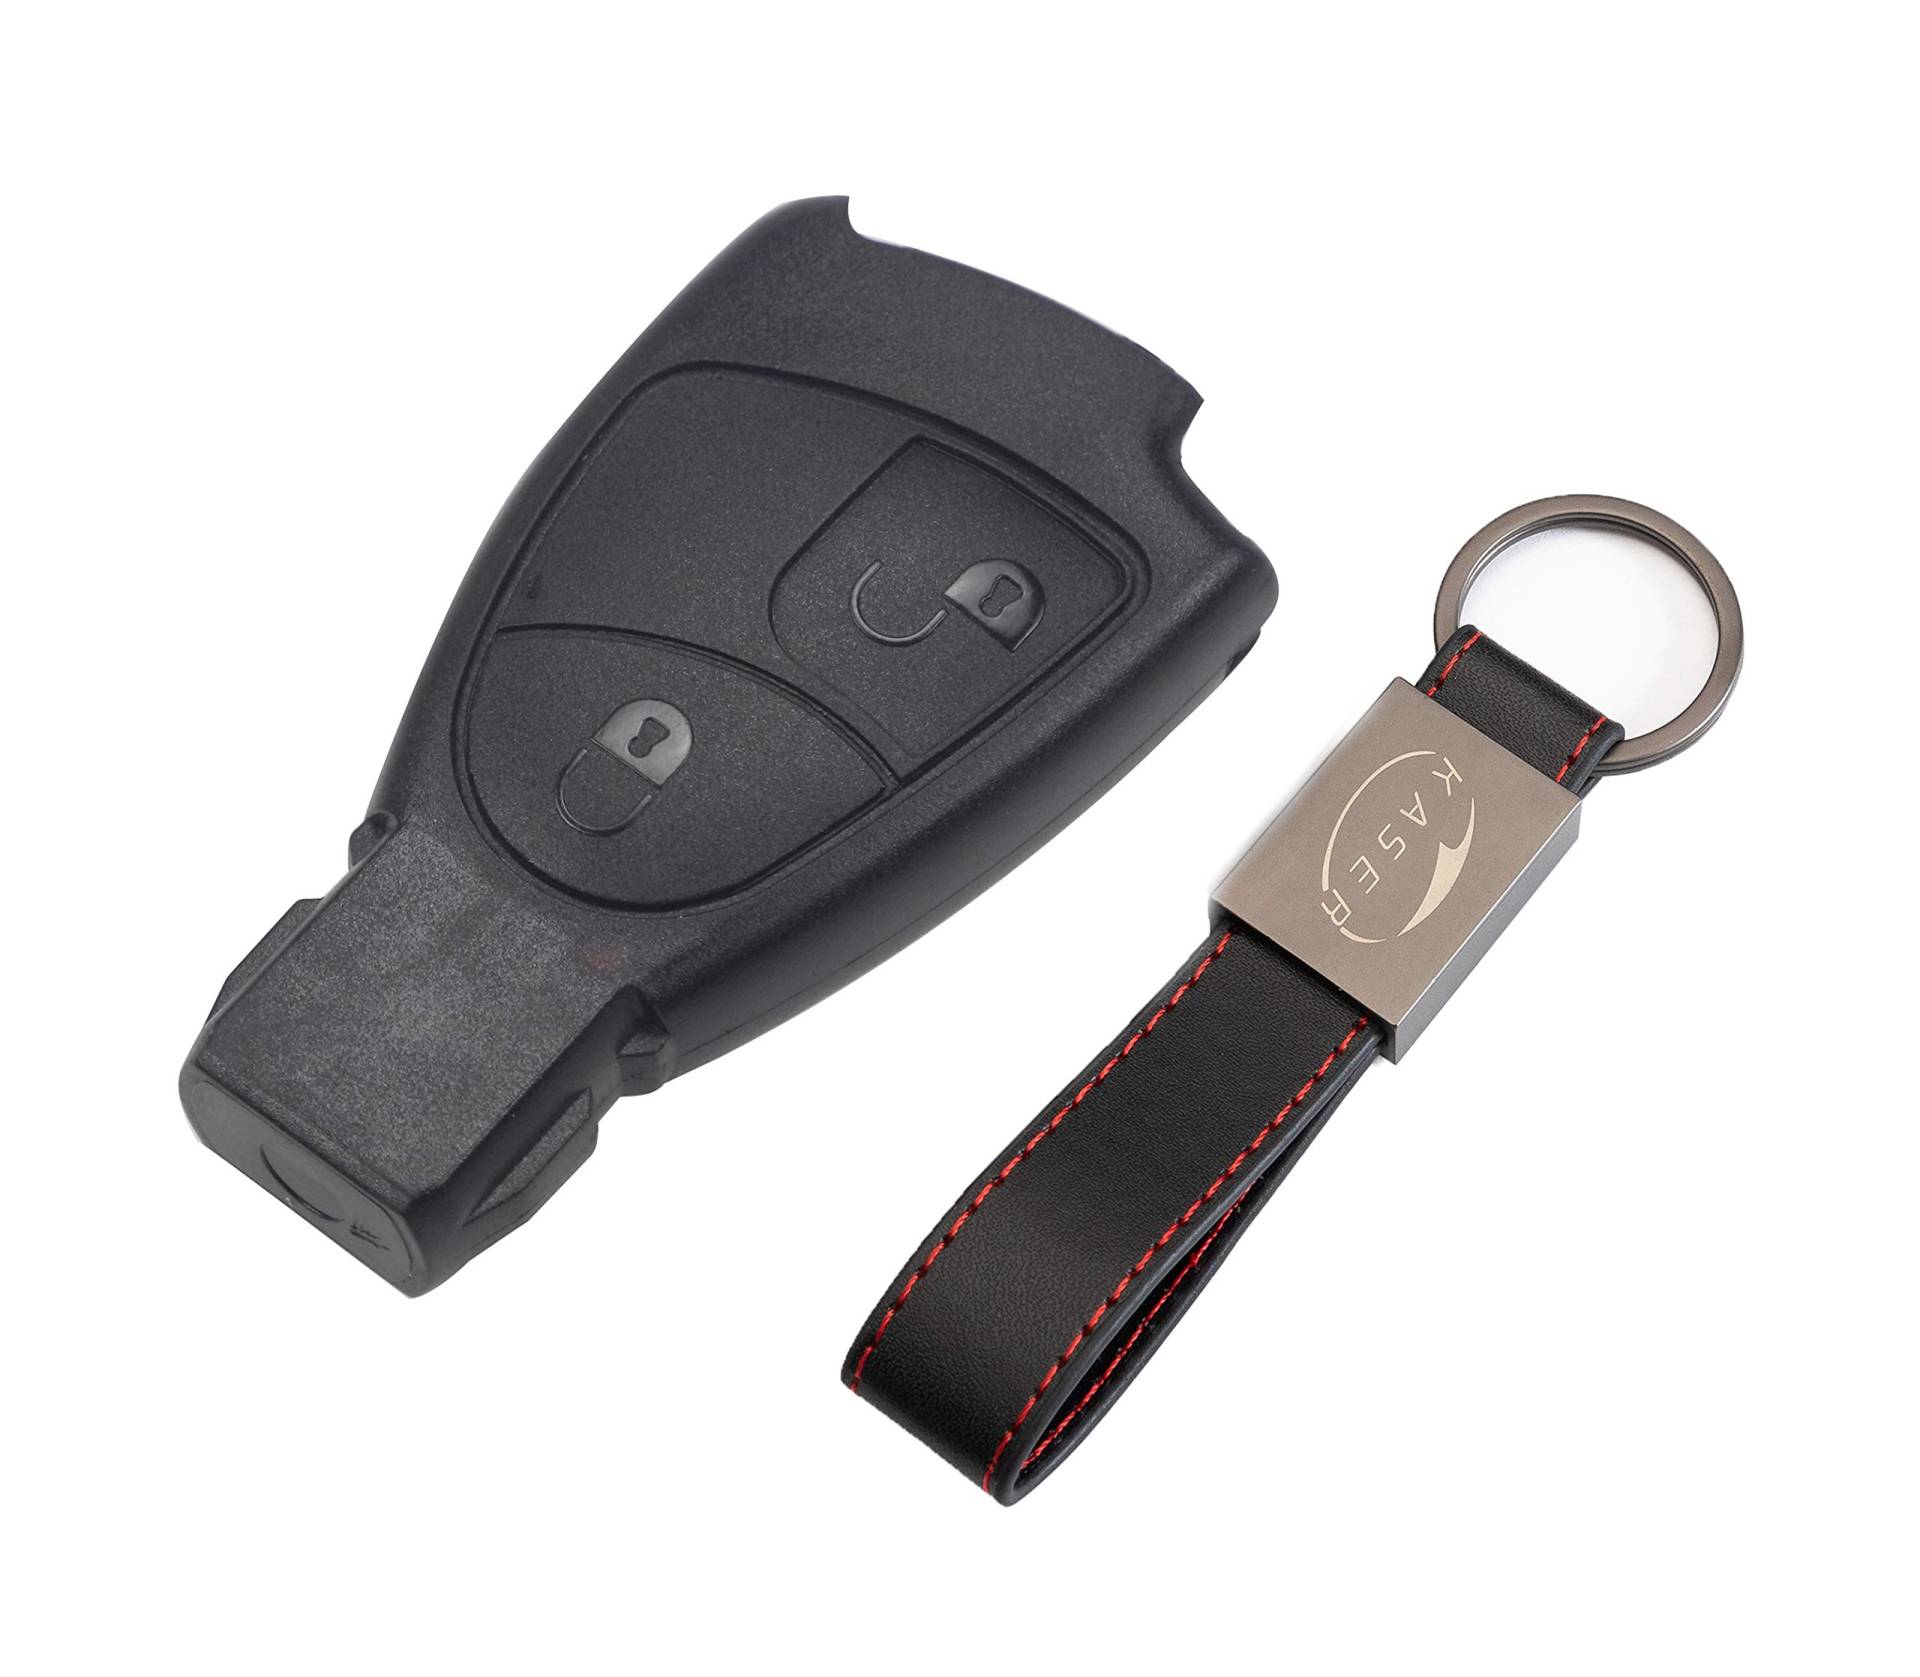 KASER Schlüssel Gehäuse Fernbedienung für Mercedes 2 Tasten Autoschlüssel Funkschlüssel Benz Classe B C e CLK SLK (ohne Logo) mit Leder Schlüsselanhänger von Kaser